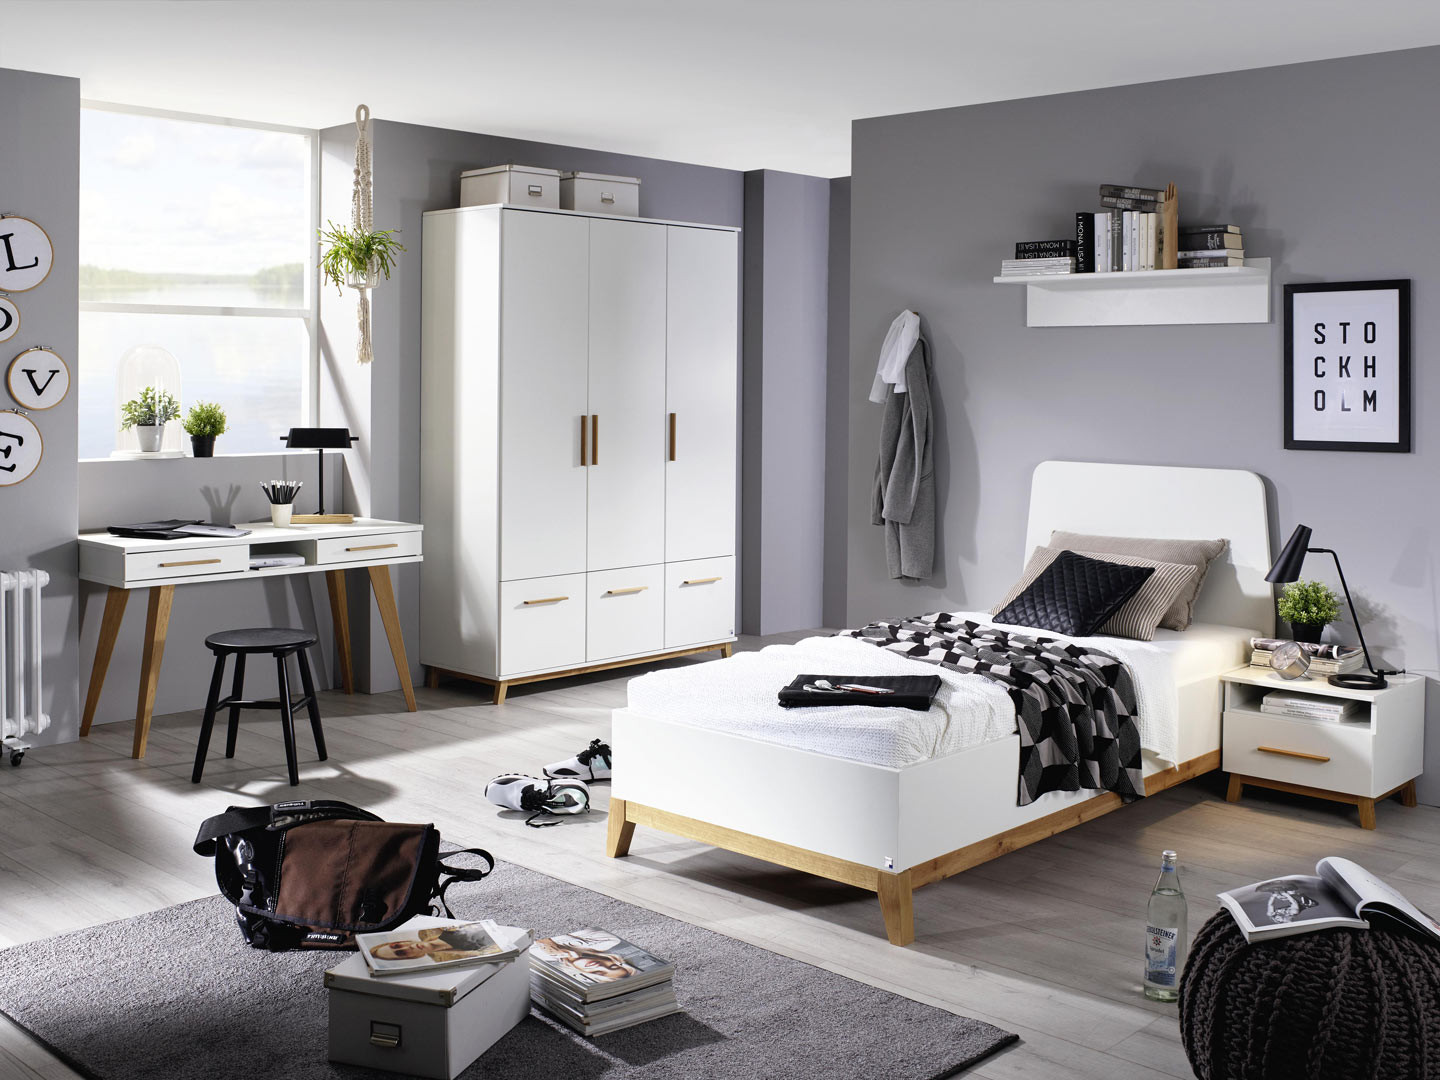 Chambre d'enfant dans le style scandinave - IKEA Suisse